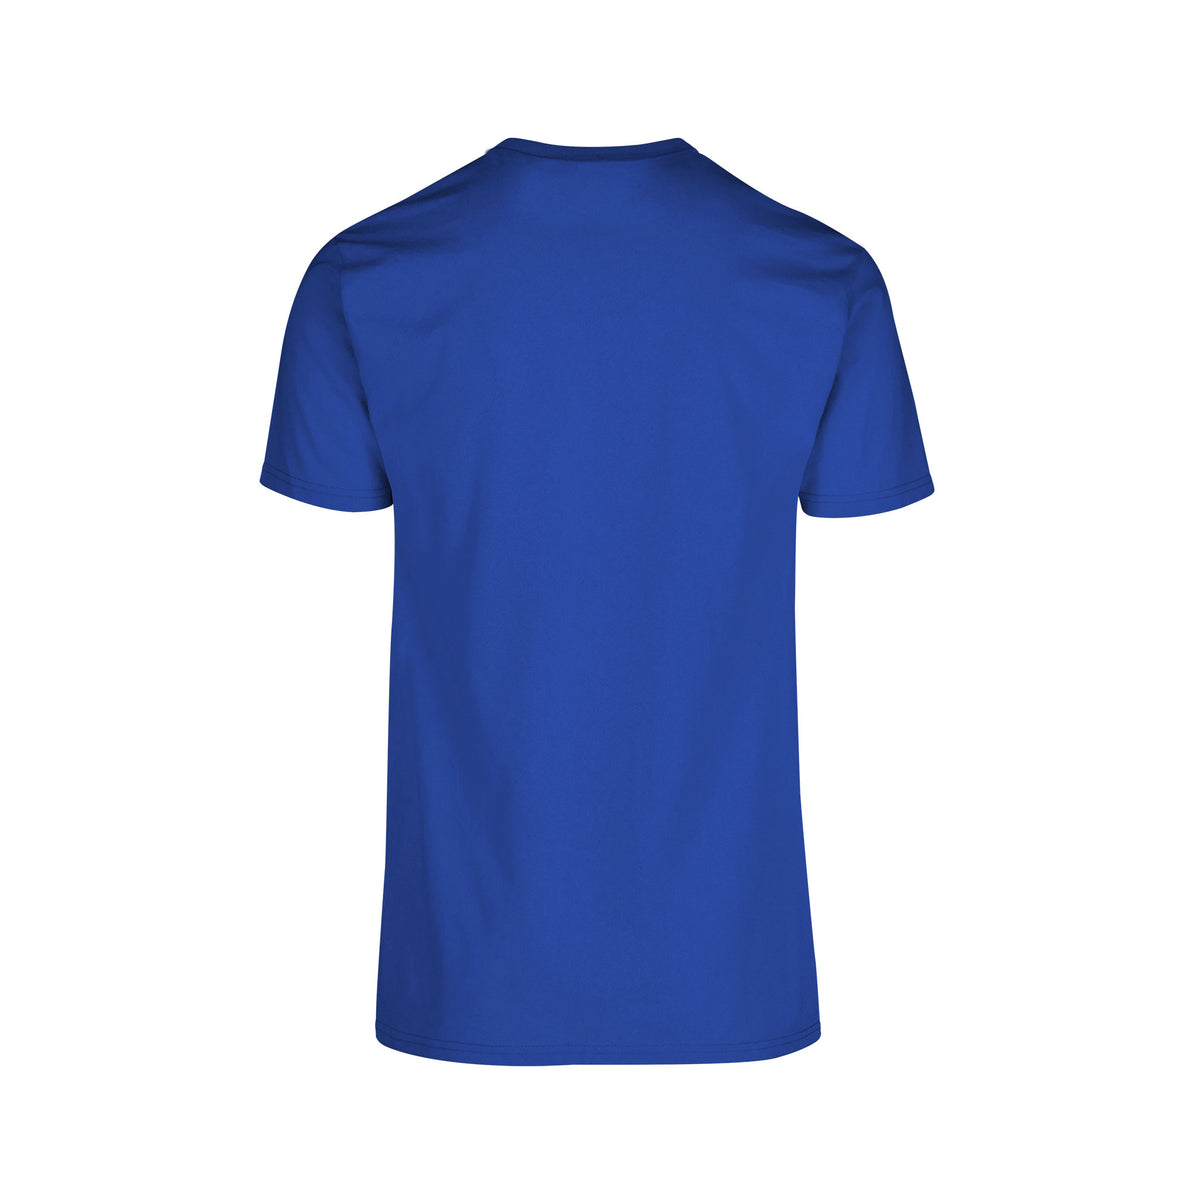 Men's Crew Neck Short Sleeve T-Shirt (Royal) – Yazbek USA Mint